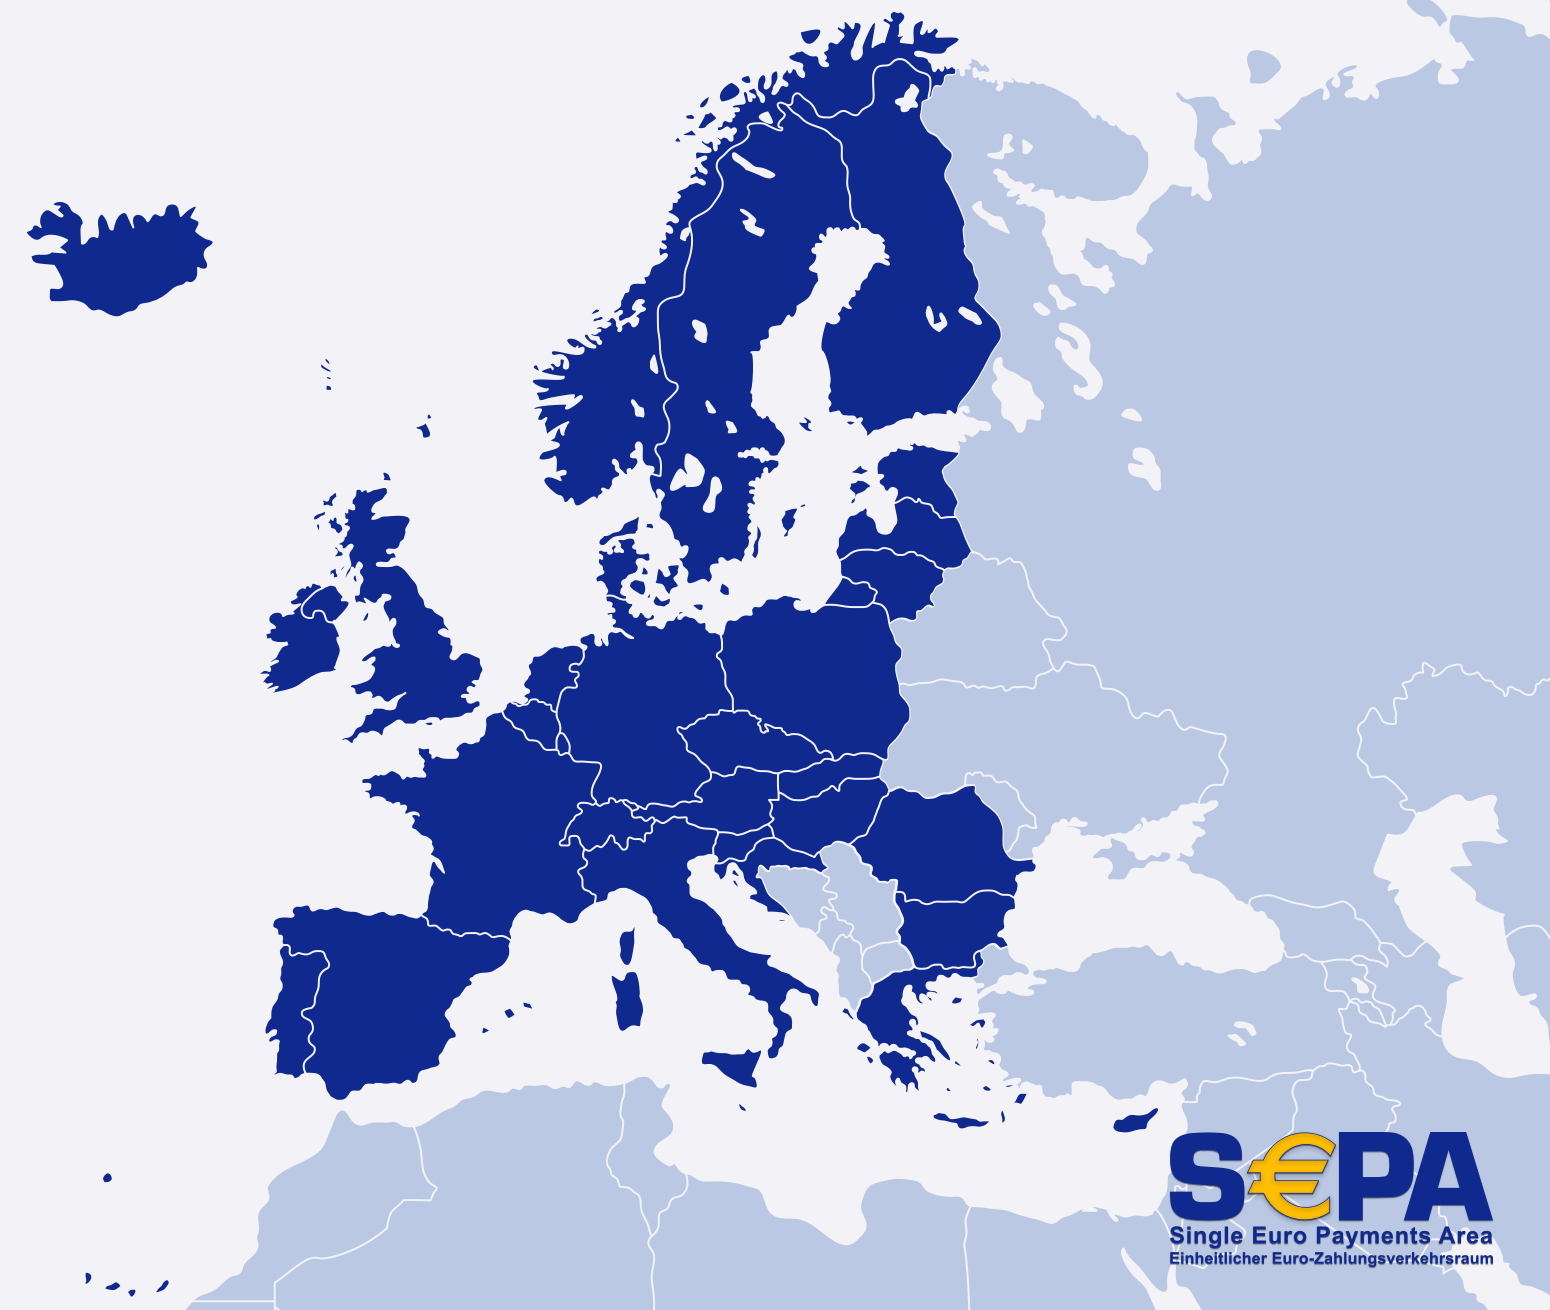 Países que pertenecen a la zona SEPA